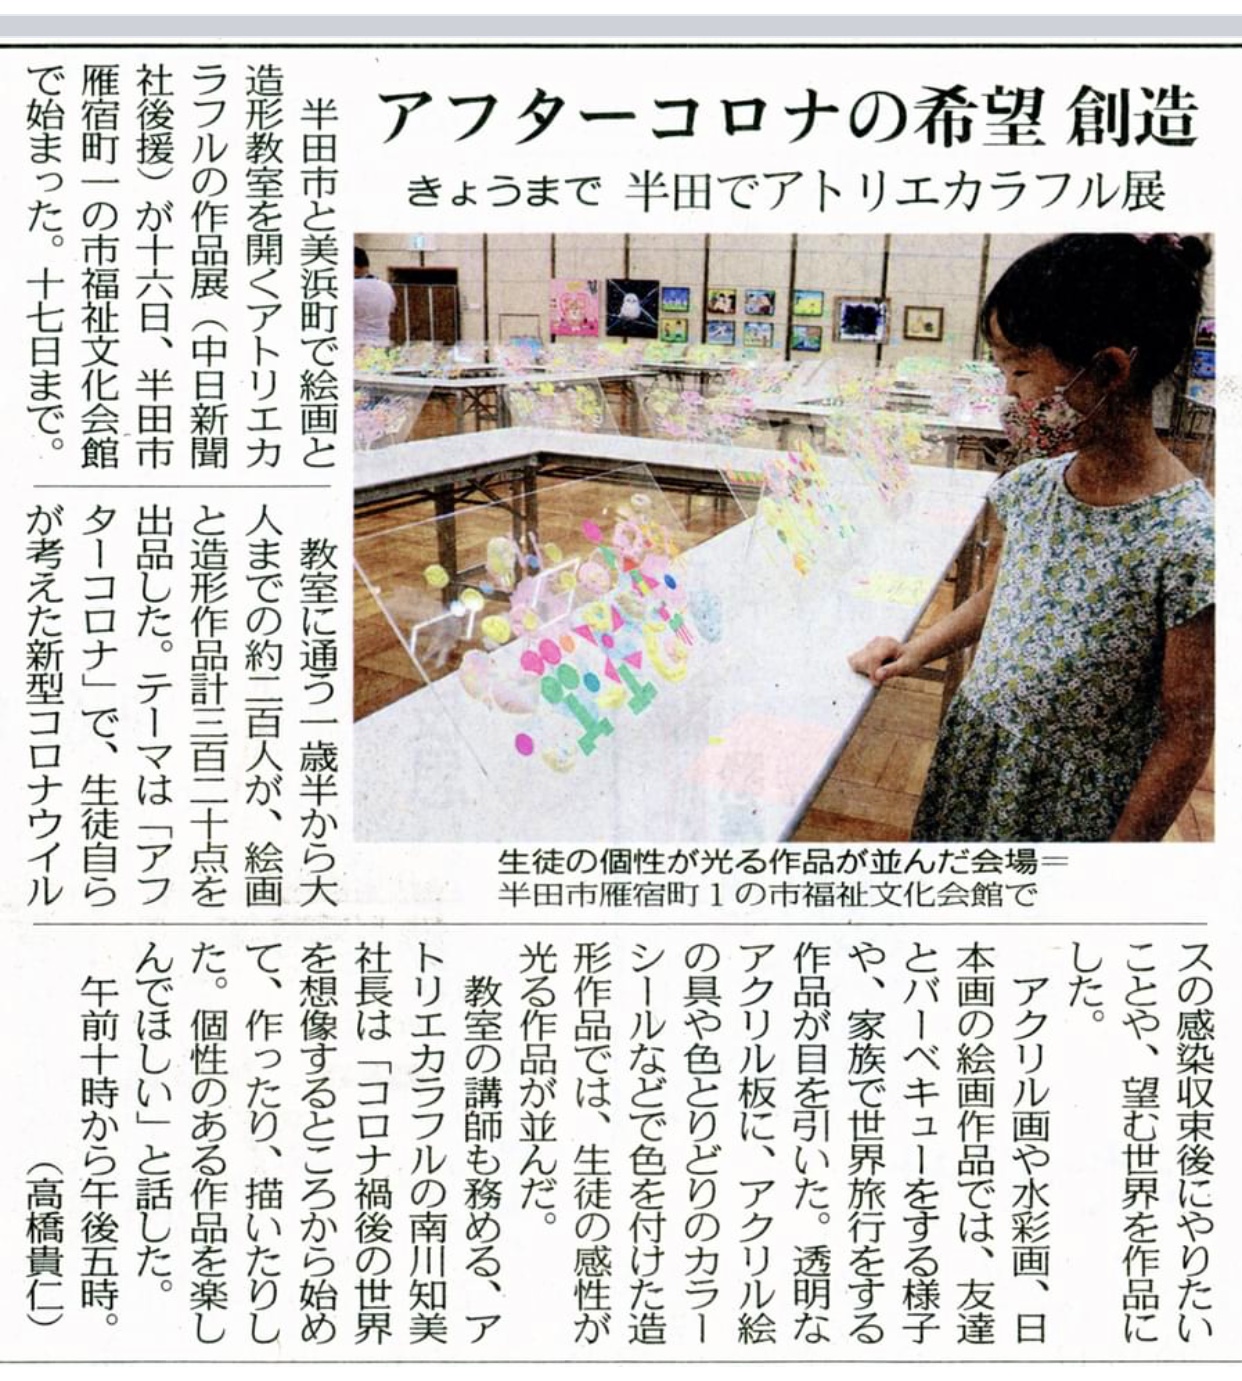 中日新聞にアトリエカラフル アート作品展2021が掲載されました。 イメージ画像 